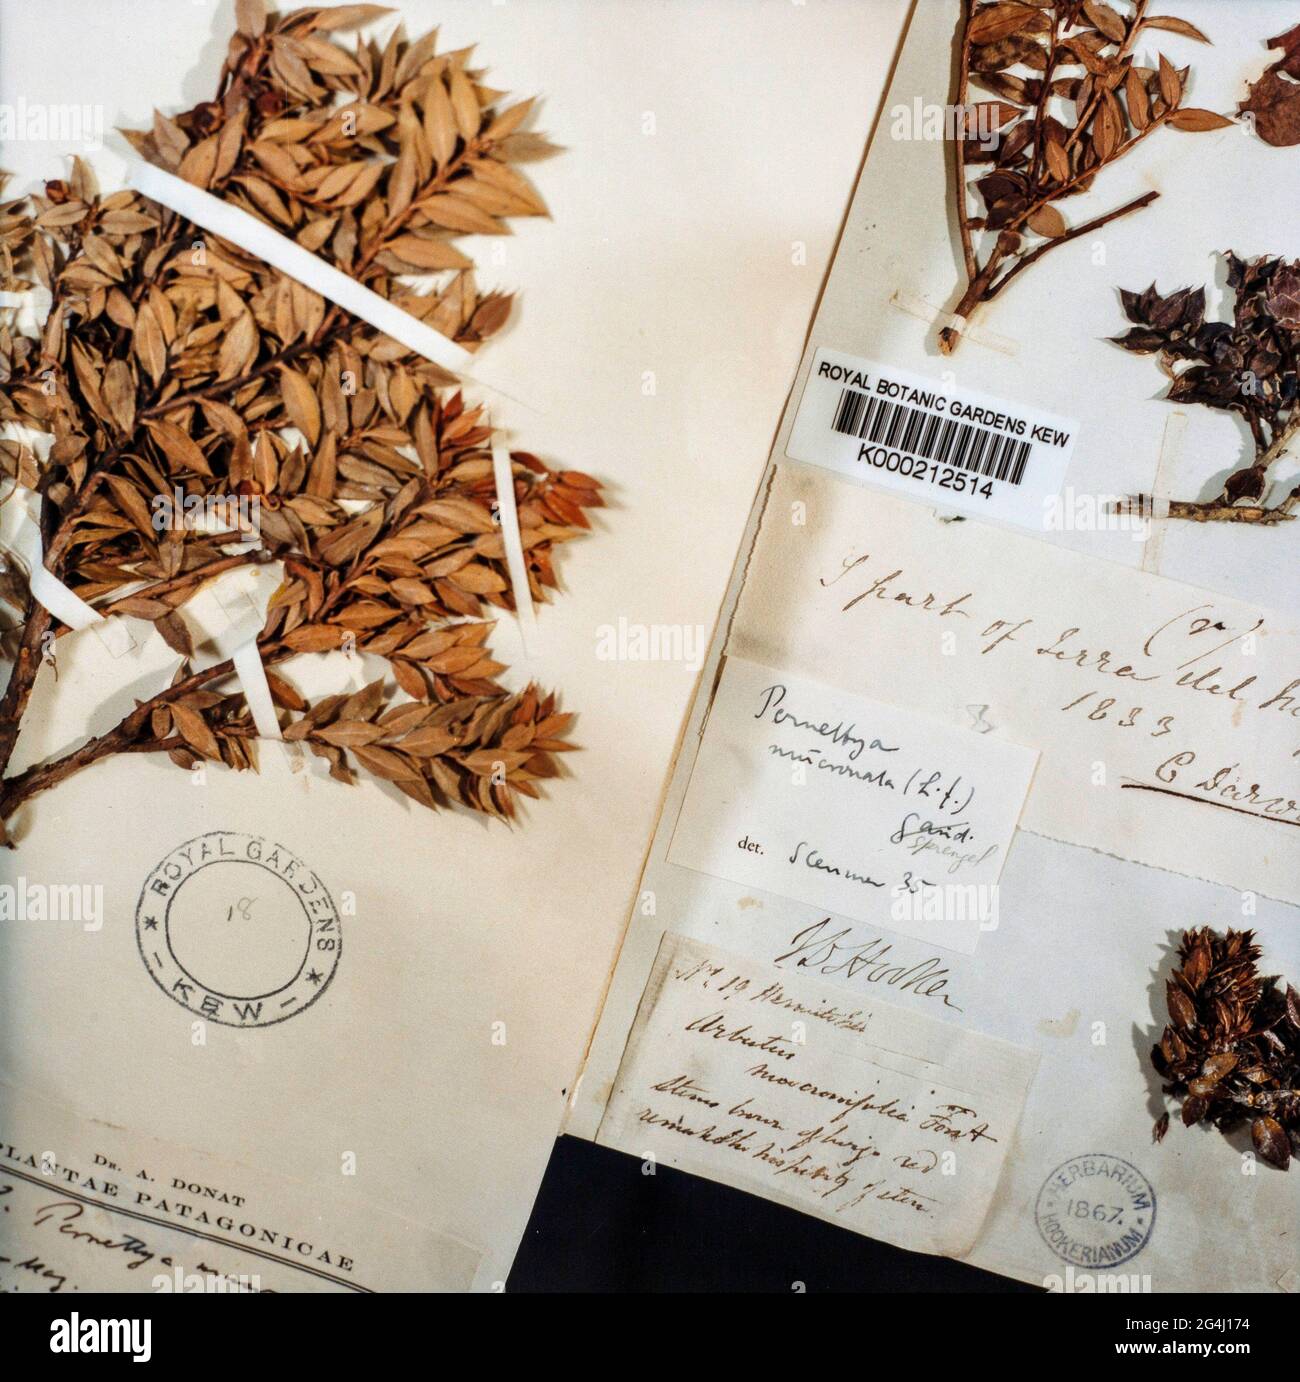 Herbariumblatt gepresste und getrocknete Exemplare aus Patagonien, die von Charles Darwin im Royal Botanic Gardens, Kew, London, England, gesammelt wurden Stockfoto